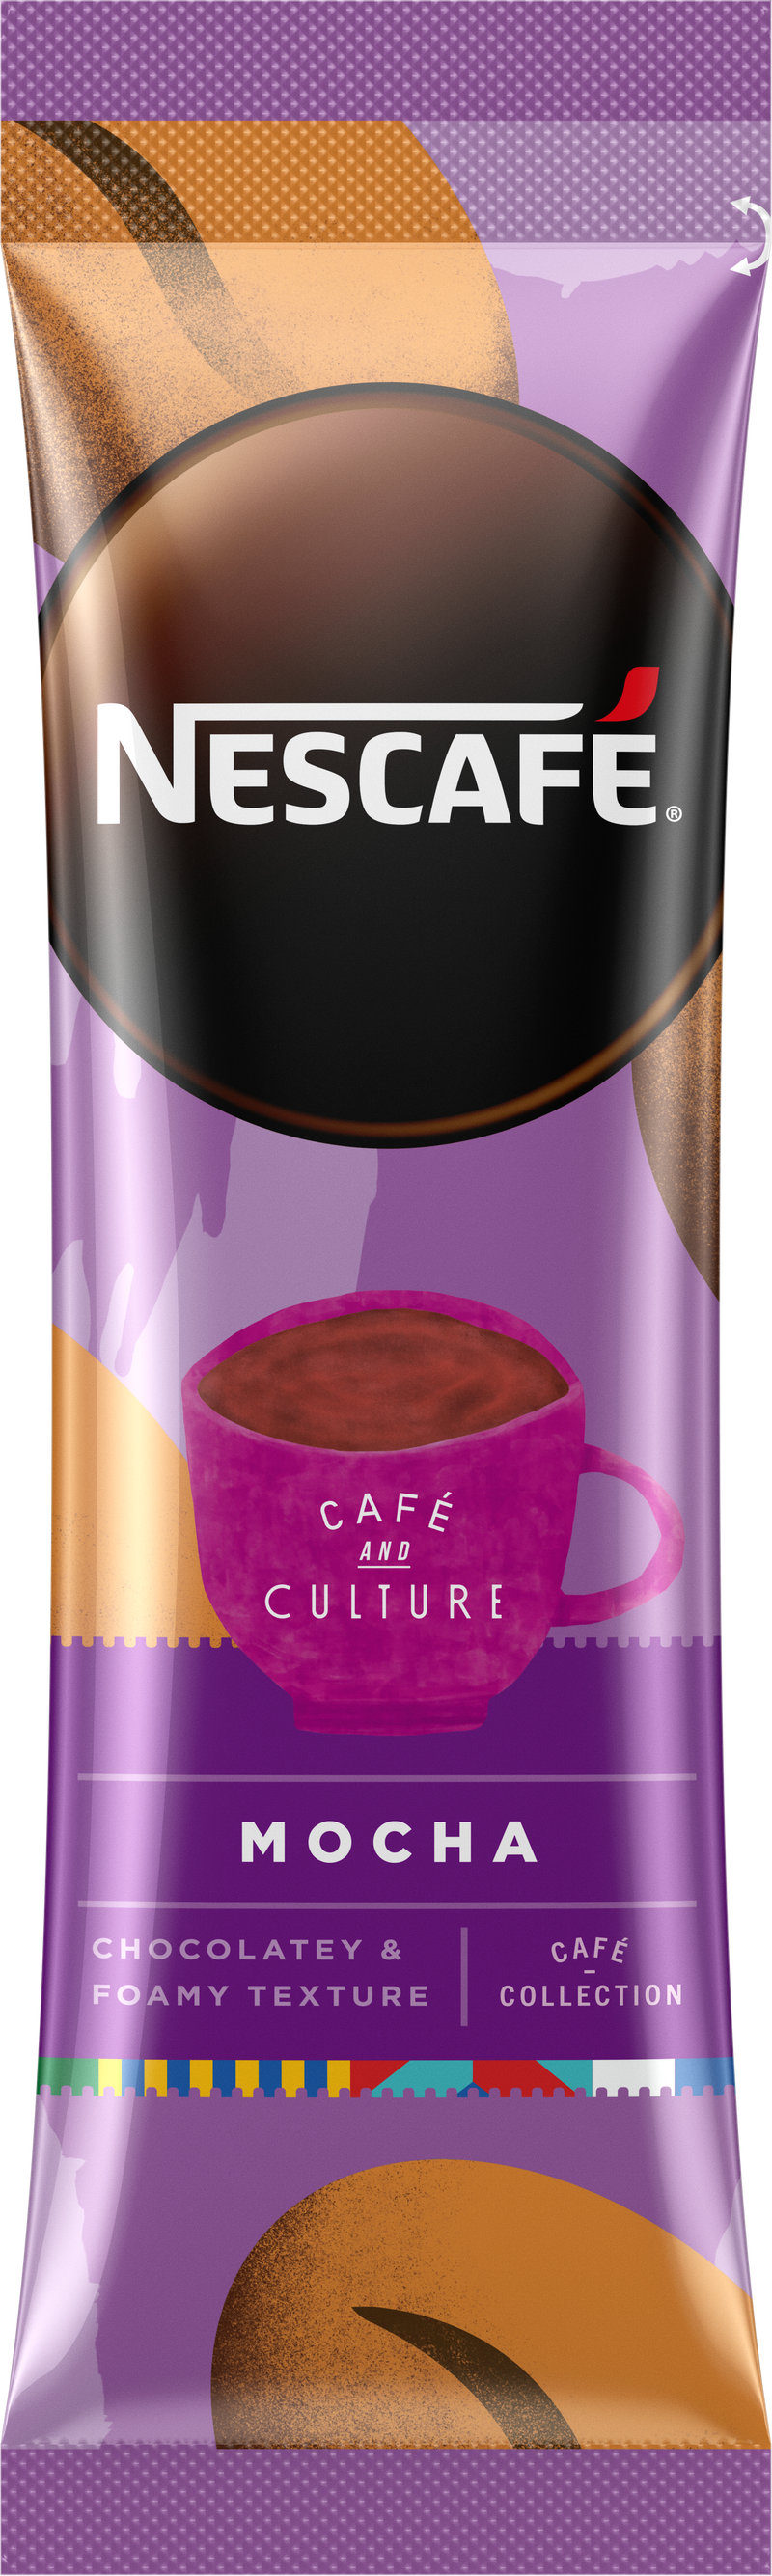 雀巢咖啡® Café Collection 朱古力咖啡